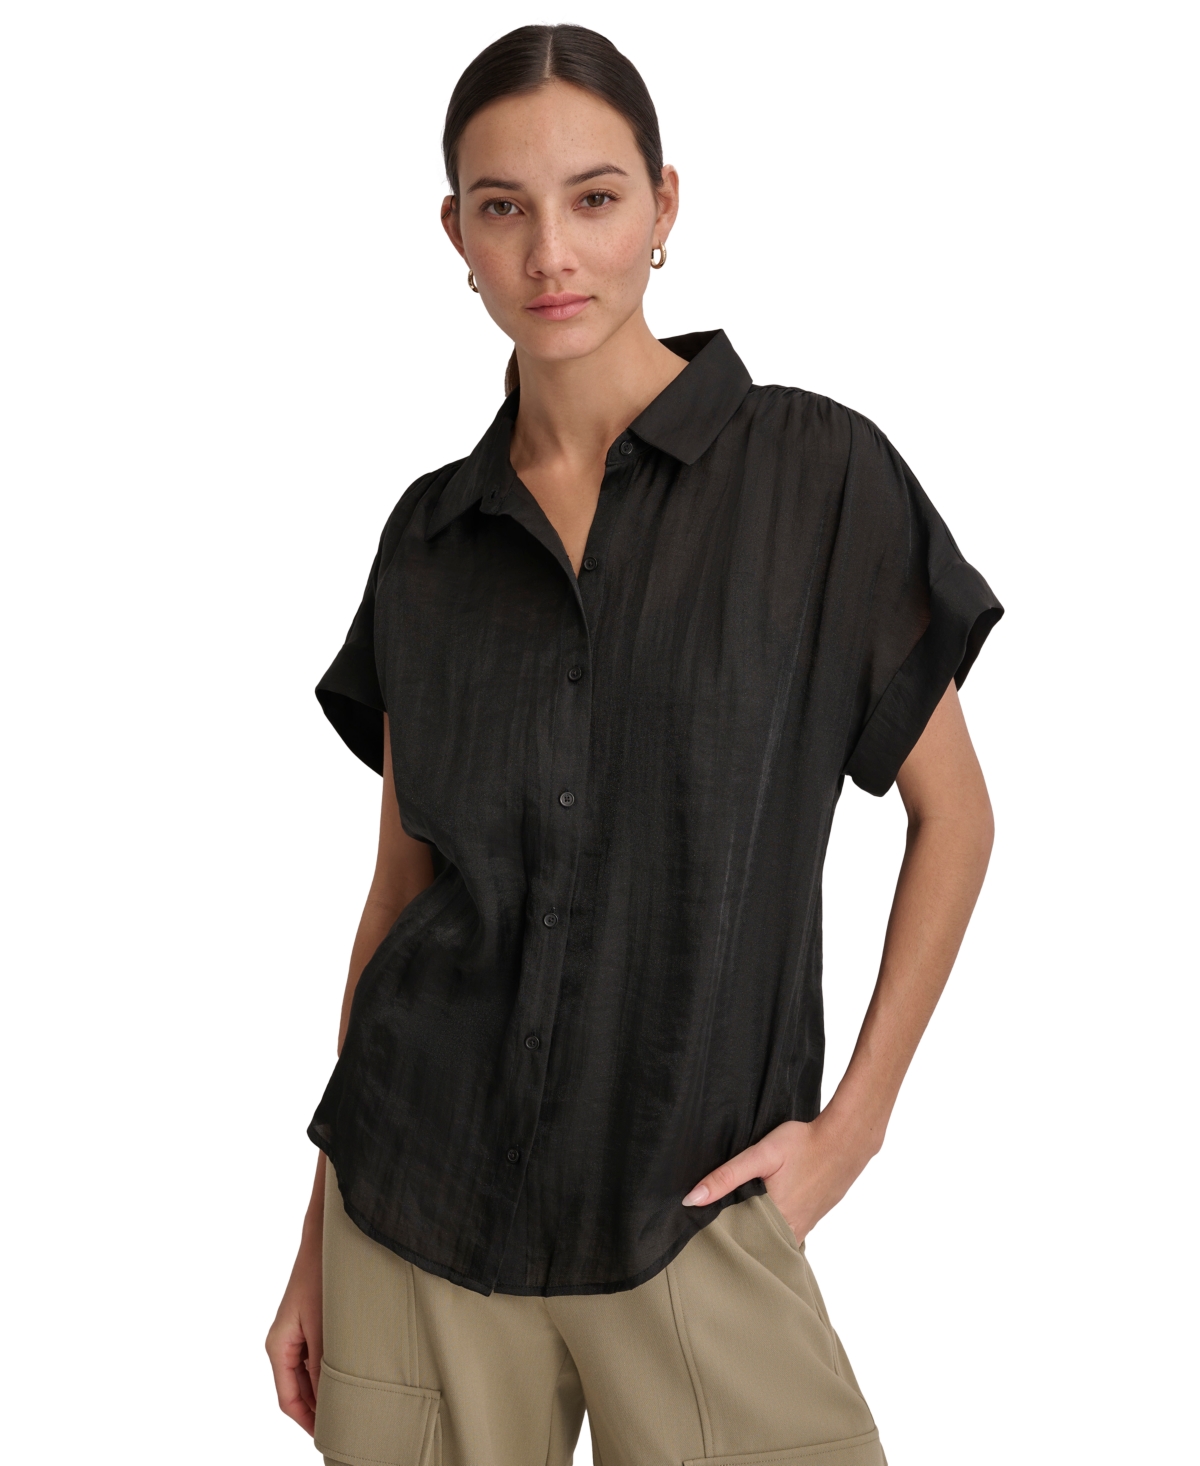 Women's Short-Sleeve Button-Front Shirt - Raspbrry C